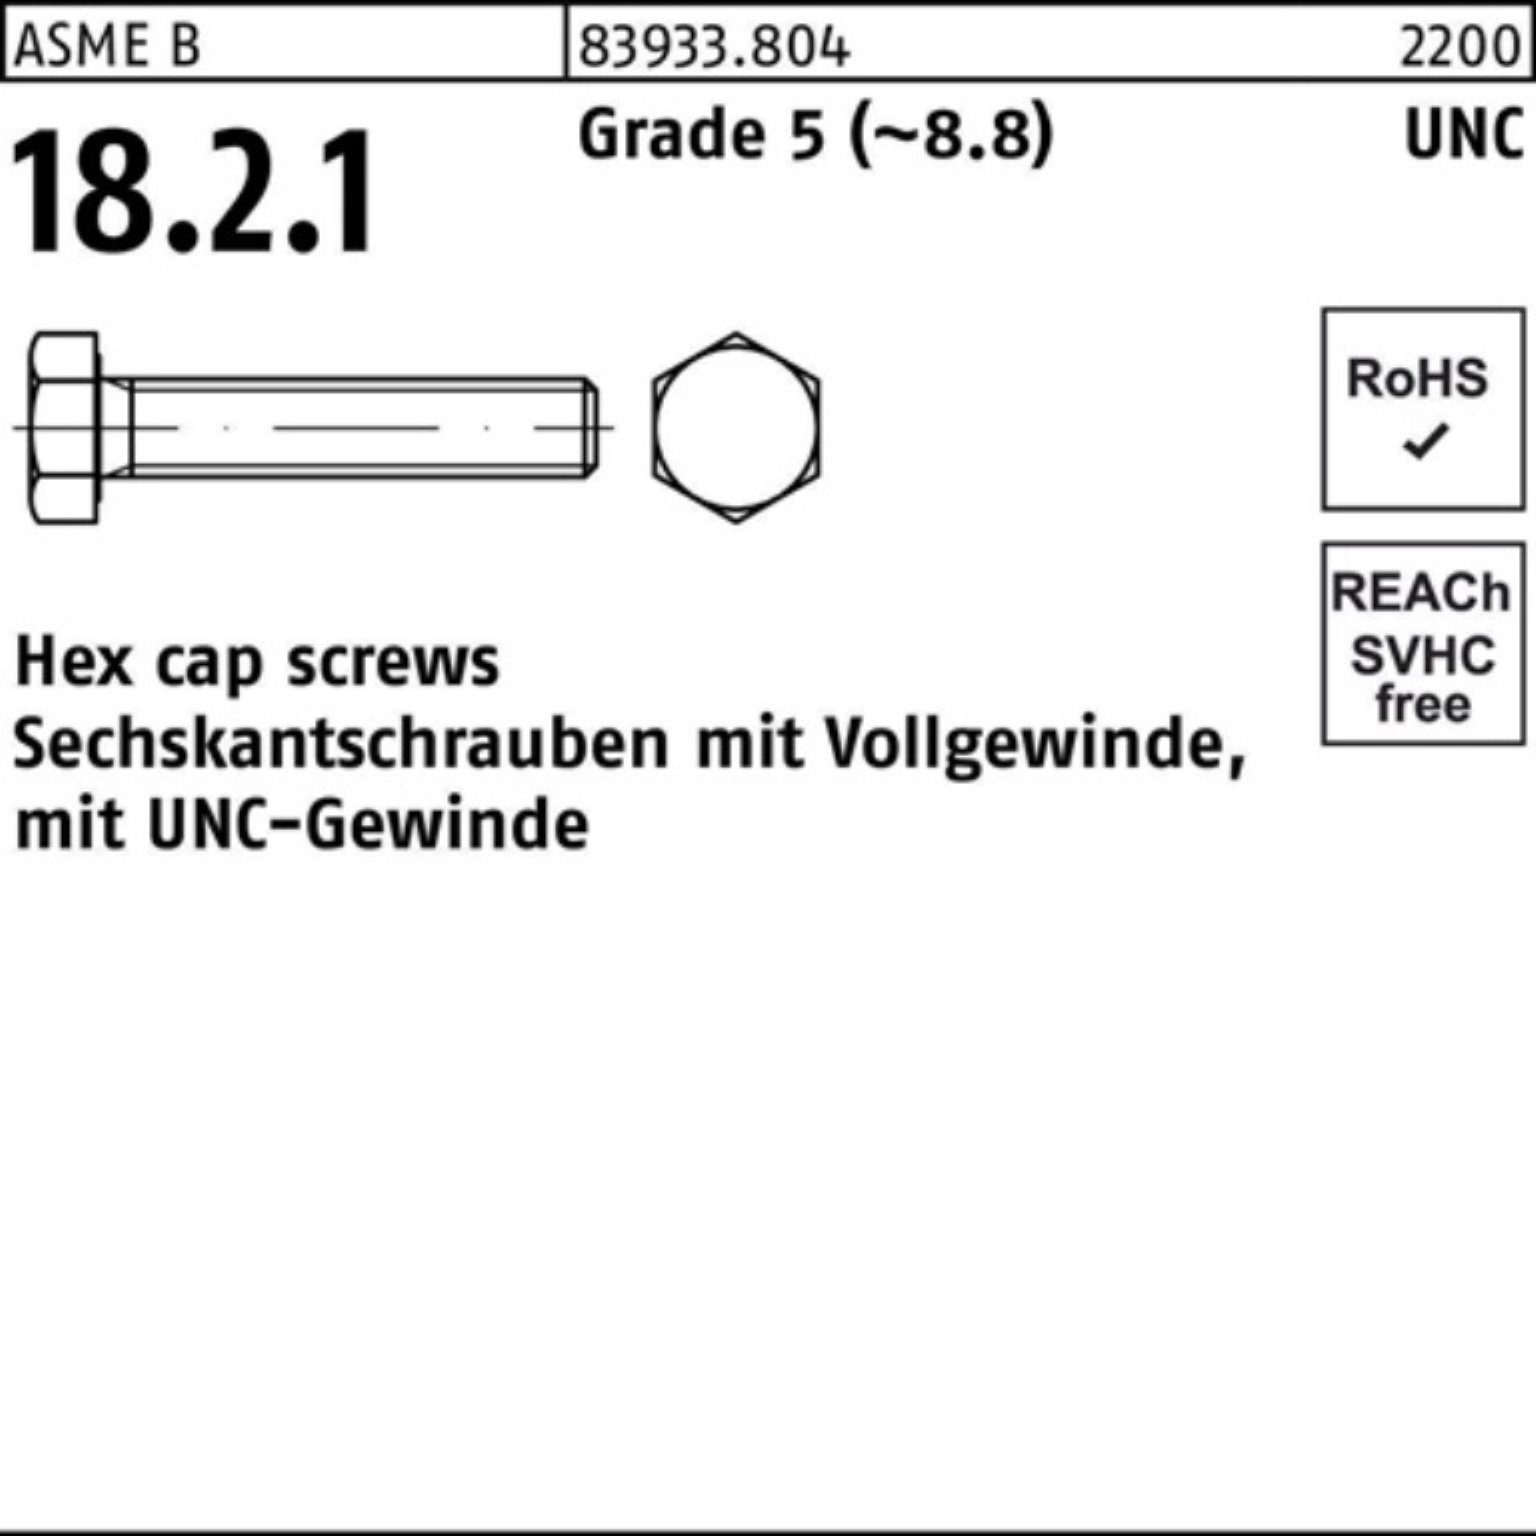 Reyher Sechskantschraube 100er Pack Sechskantschraube R 83933 UNC-Gewinde VG 5/16x 5/8 Grade 5